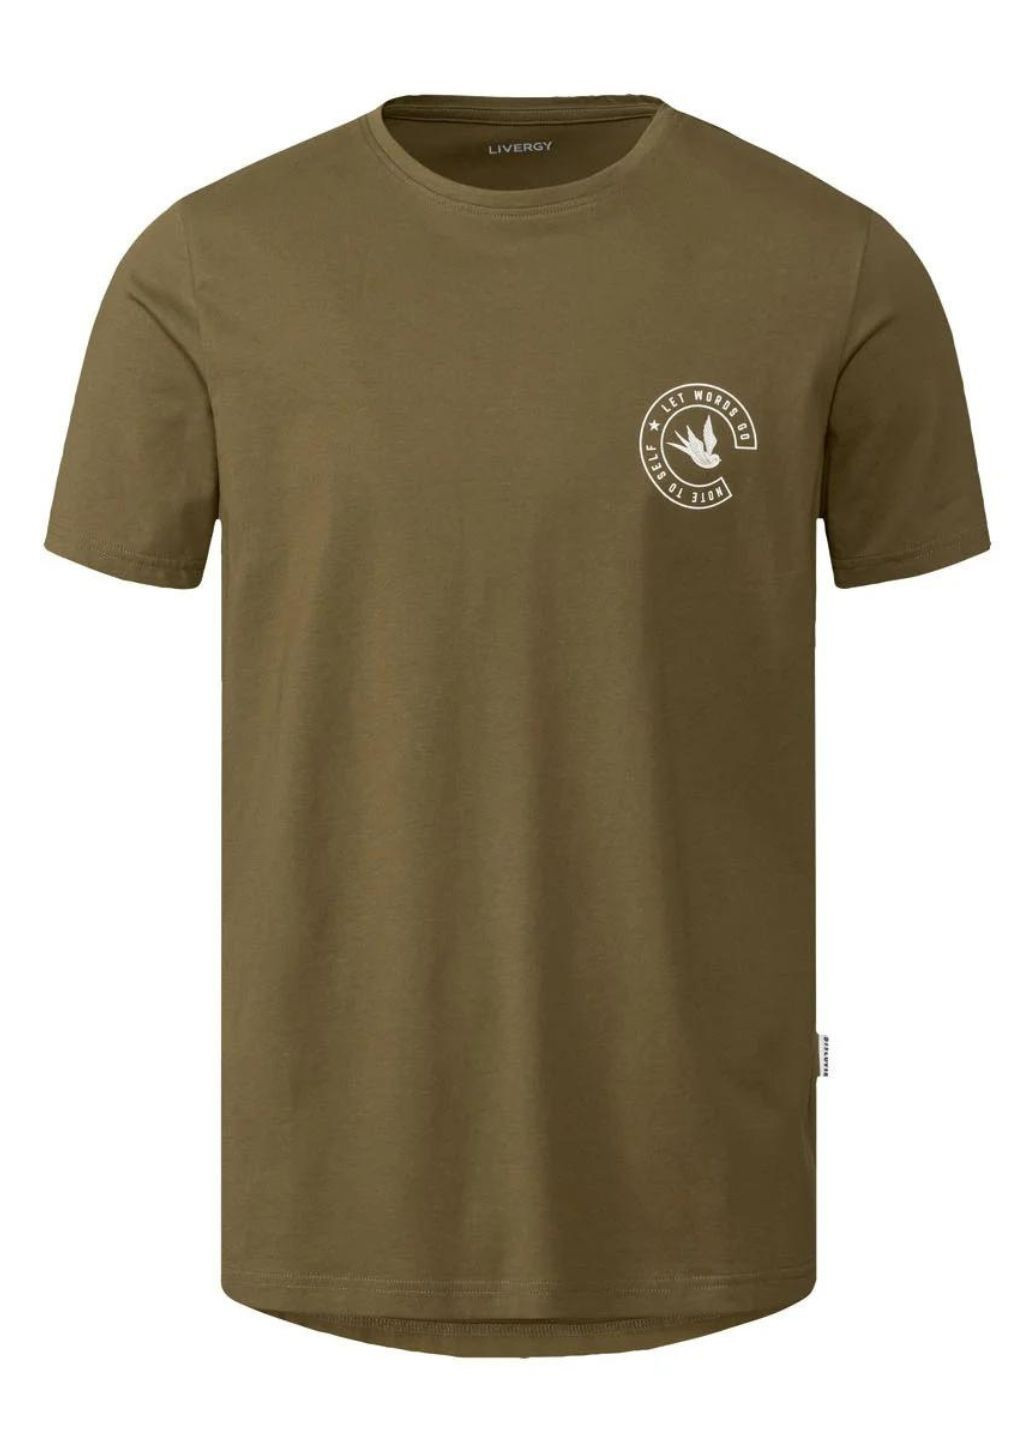 Хаки (оливковая) футболка мужская. хлопок с коротким рукавом Livergy